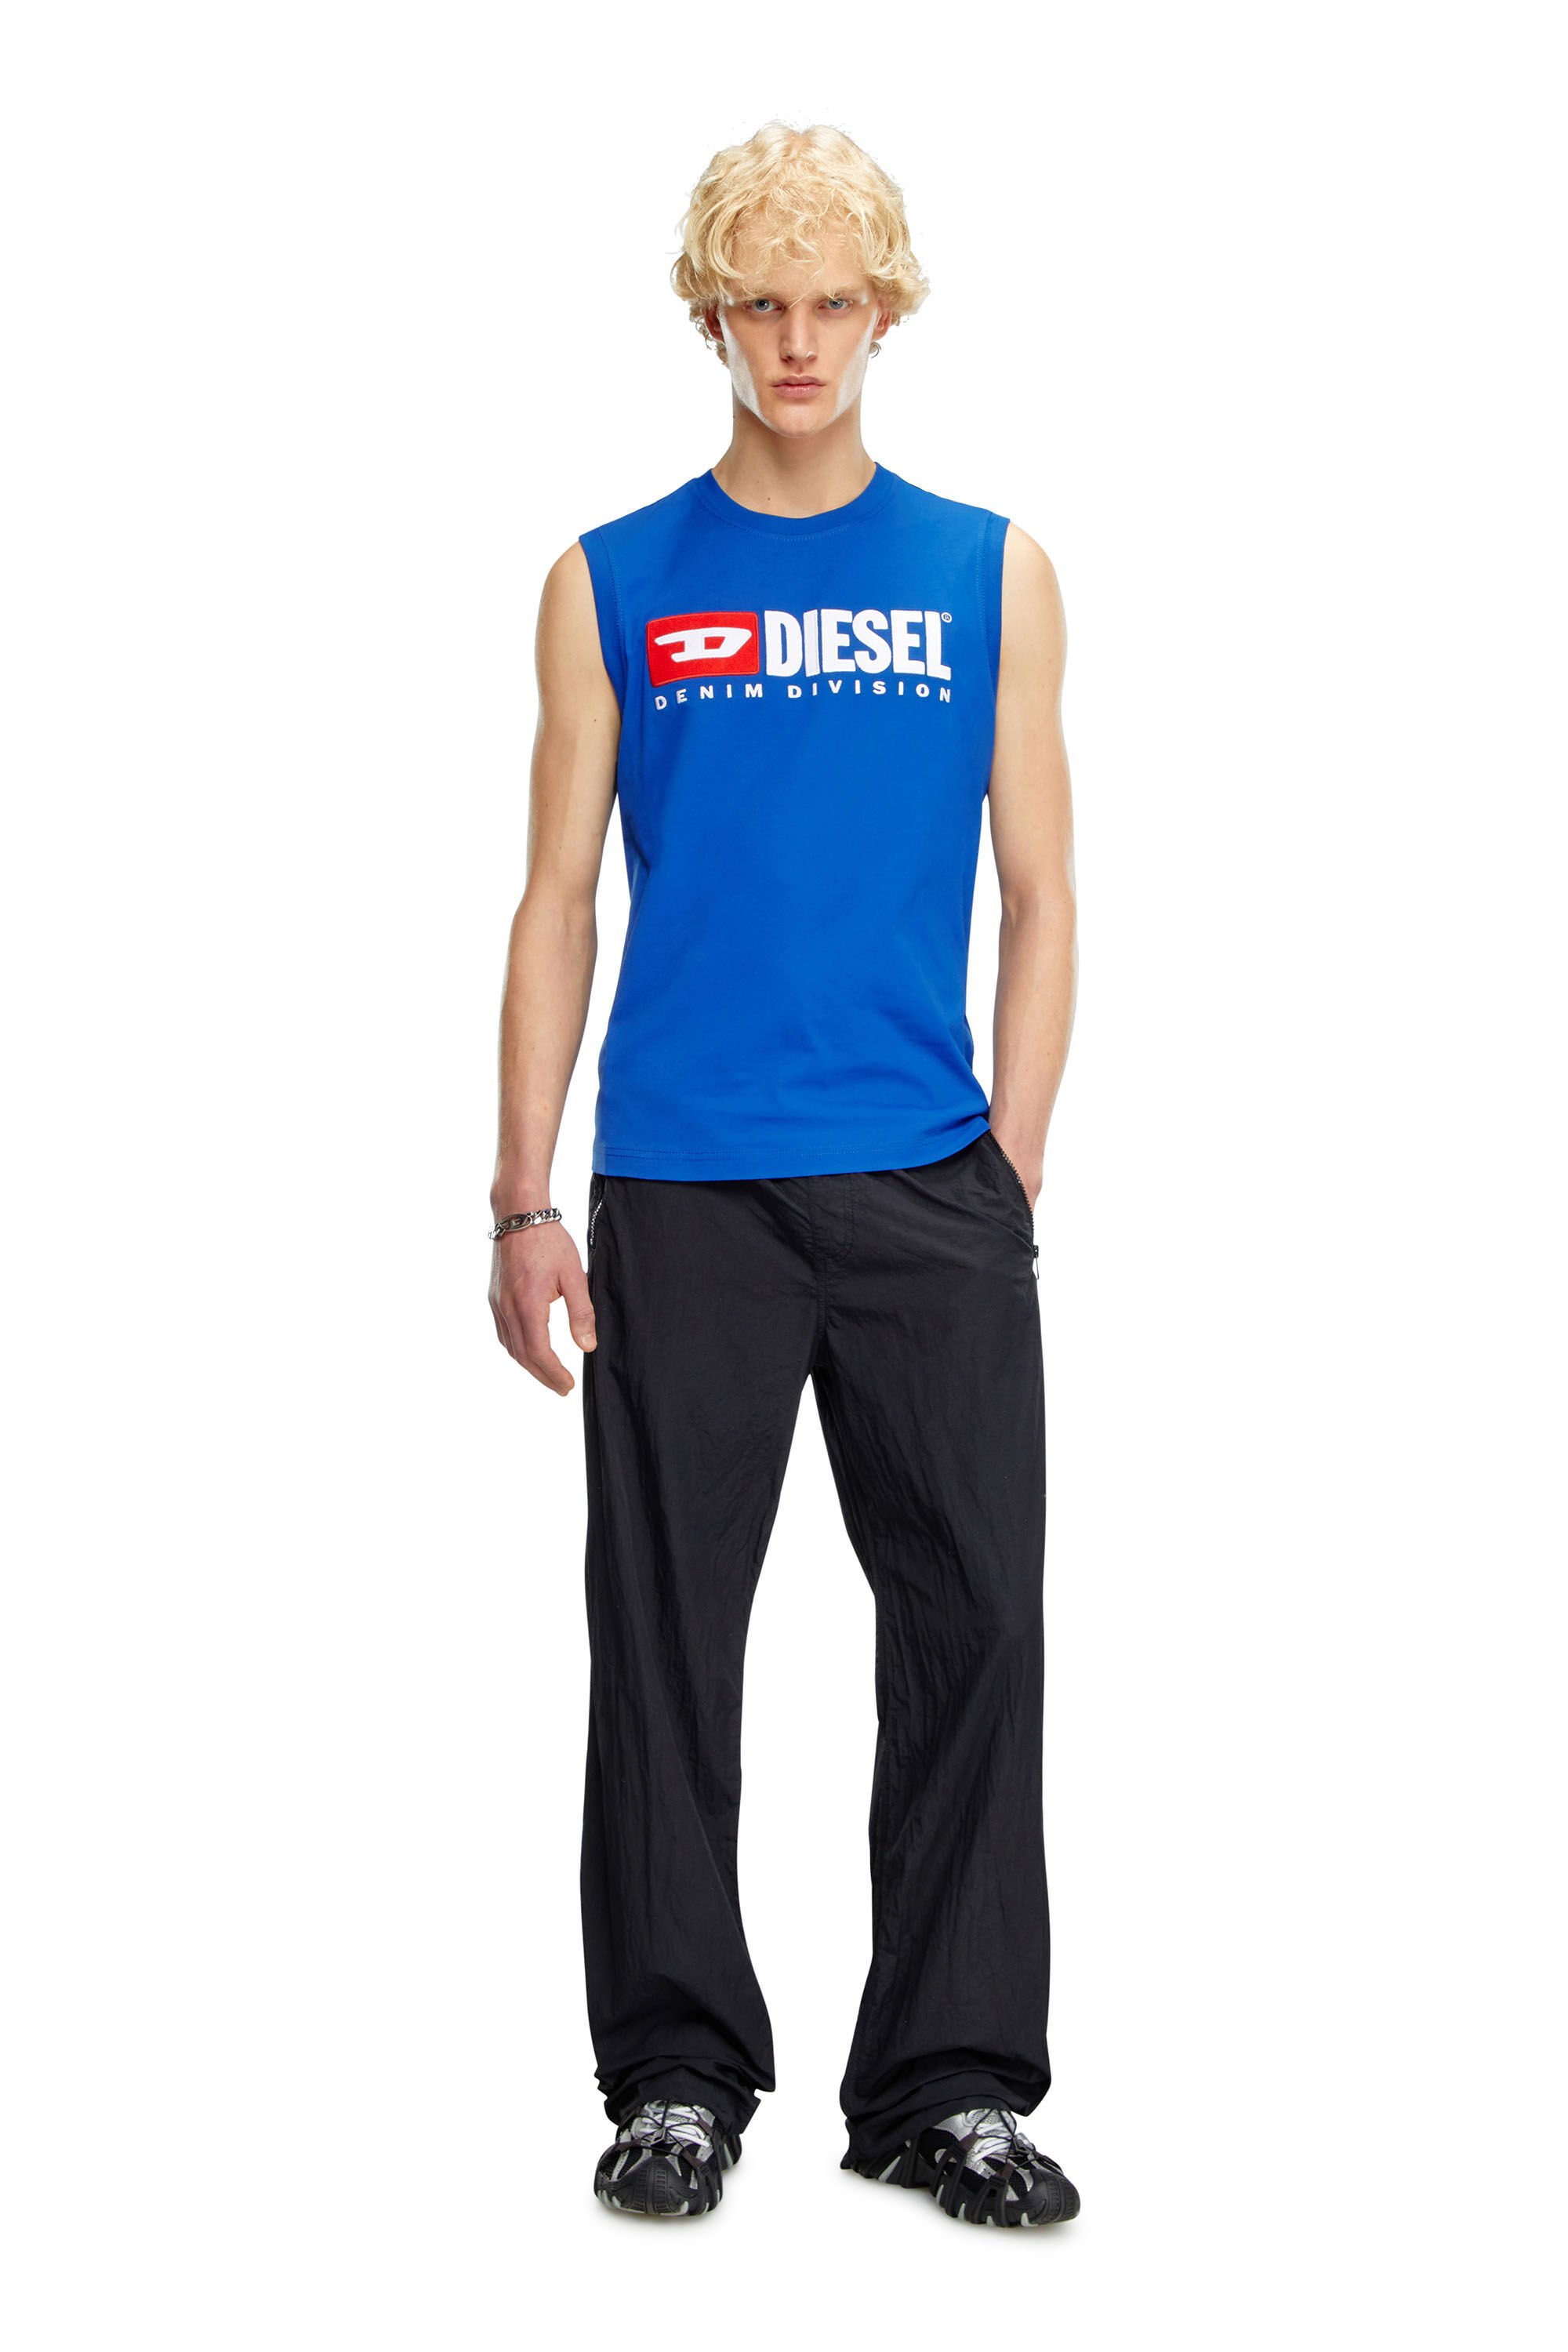 Diesel - T-ISCO-DIV, Hombre Camiseta sin mangas con logotipo estampado en el pecho in Azul marino - Image 1